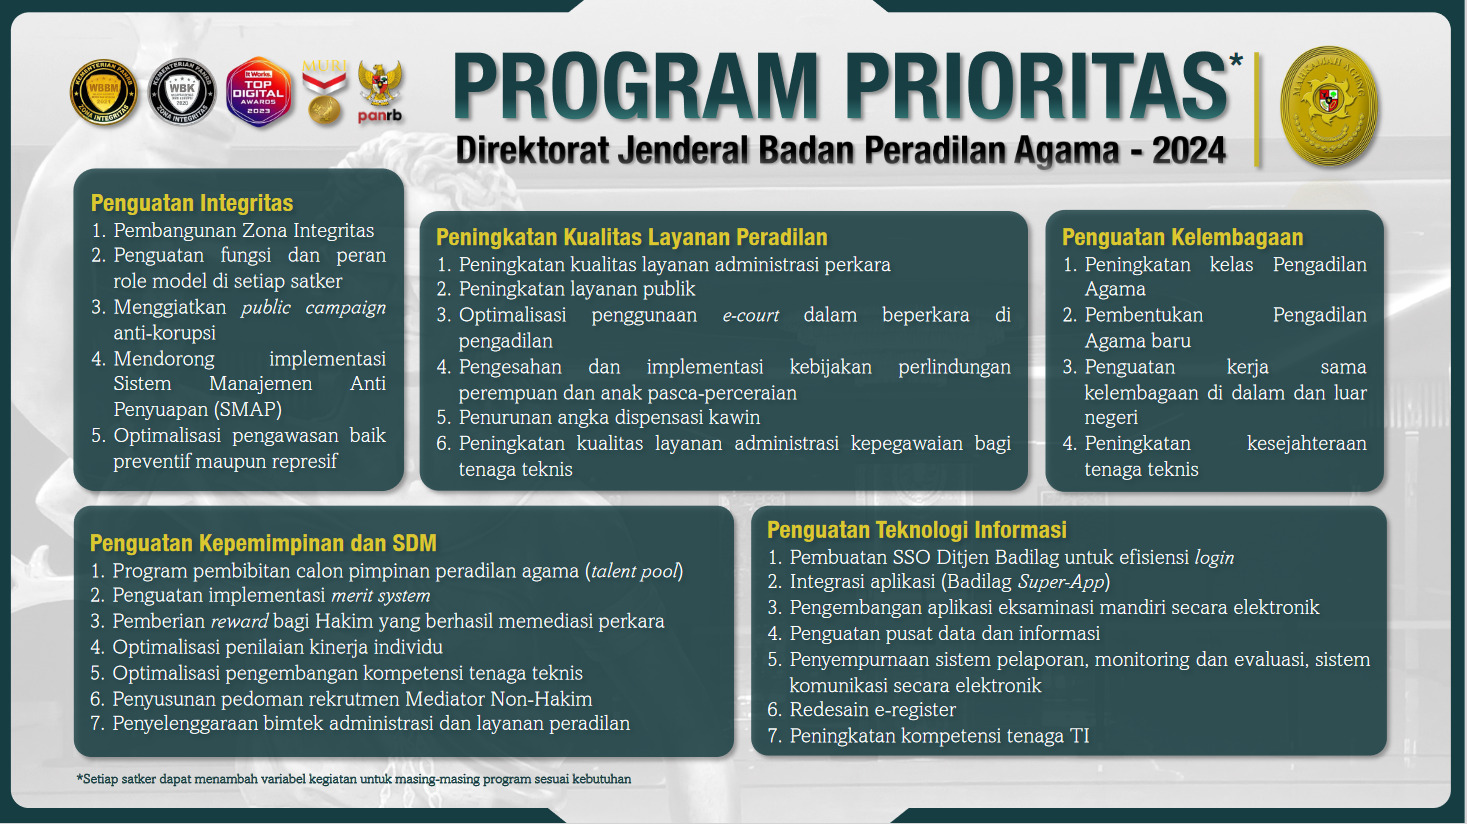 Program Prioritas Ditjen Badilag MA. RI 2024